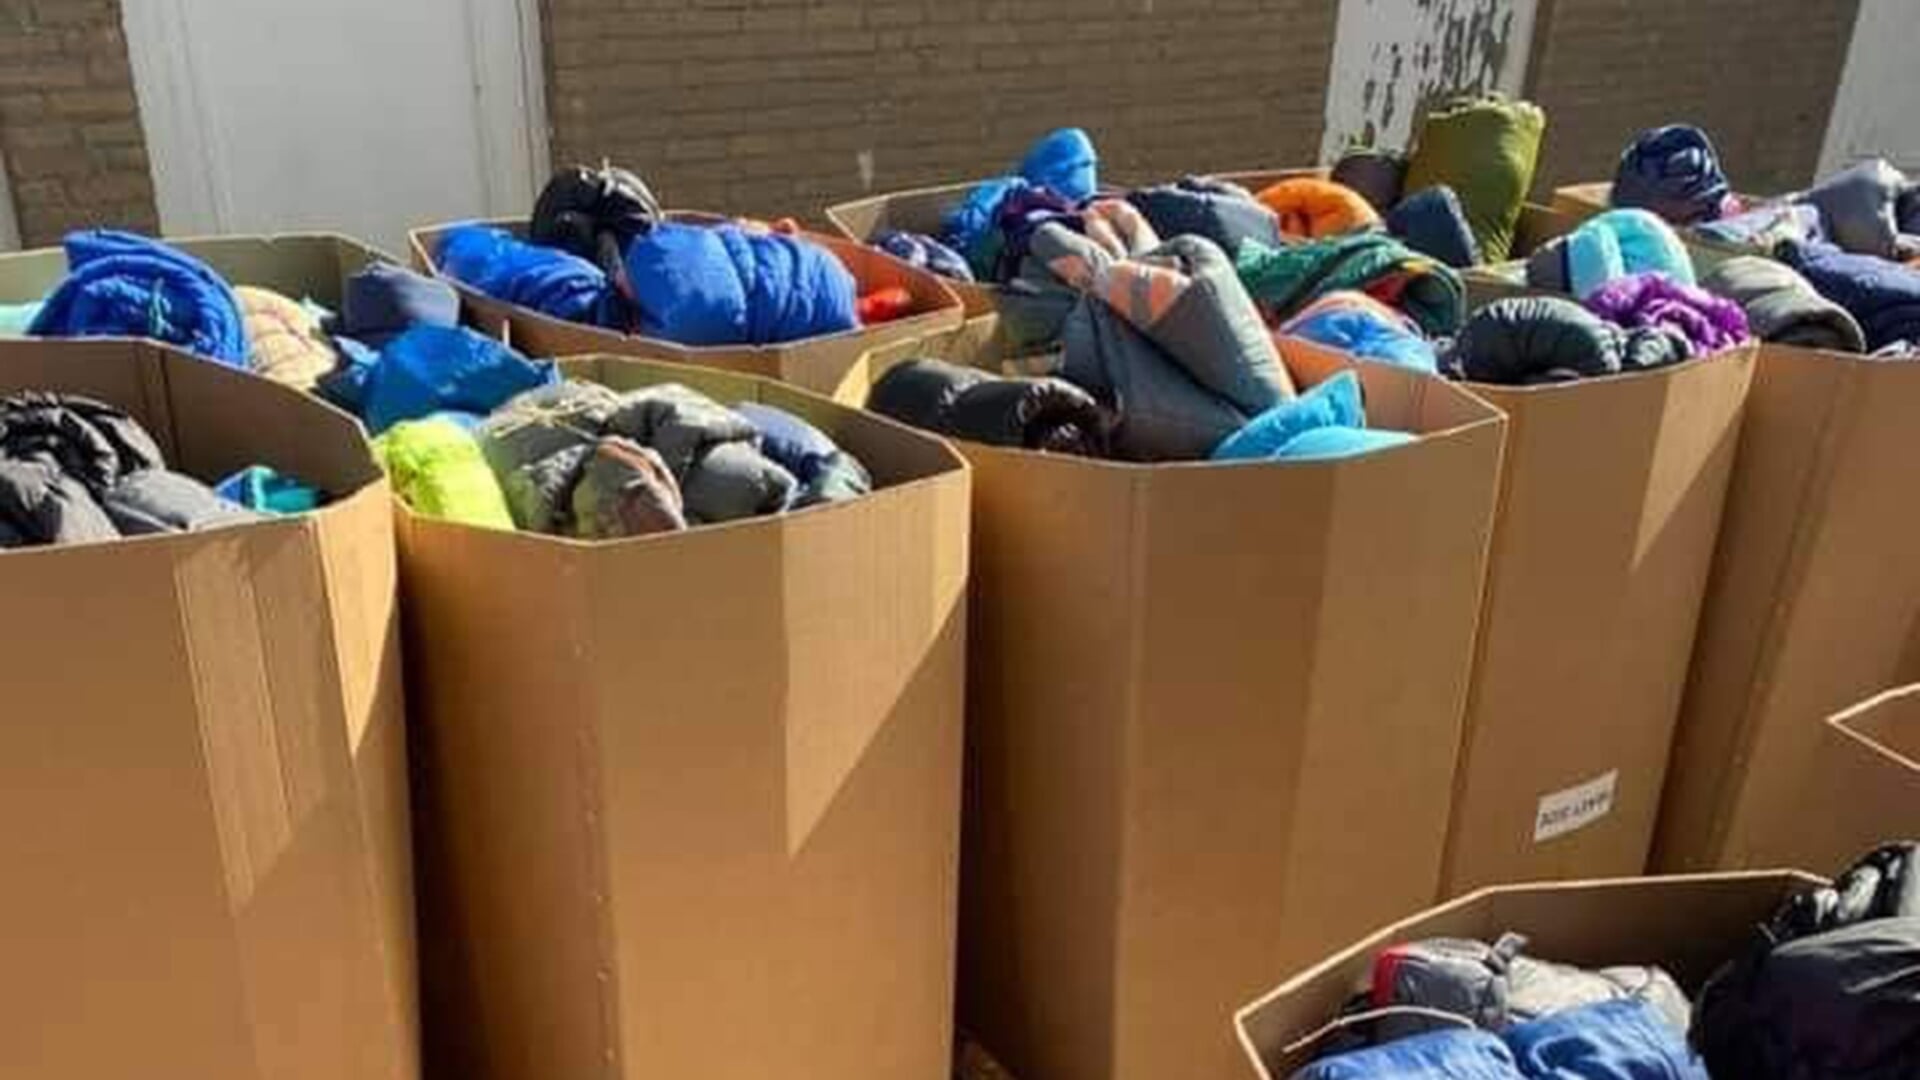 Foto uit 2020: toen werd in Weesp een inzamelactie gehouden voor bewoners van het afgebrande vluchtelingenkamp Moria op Lesbos.